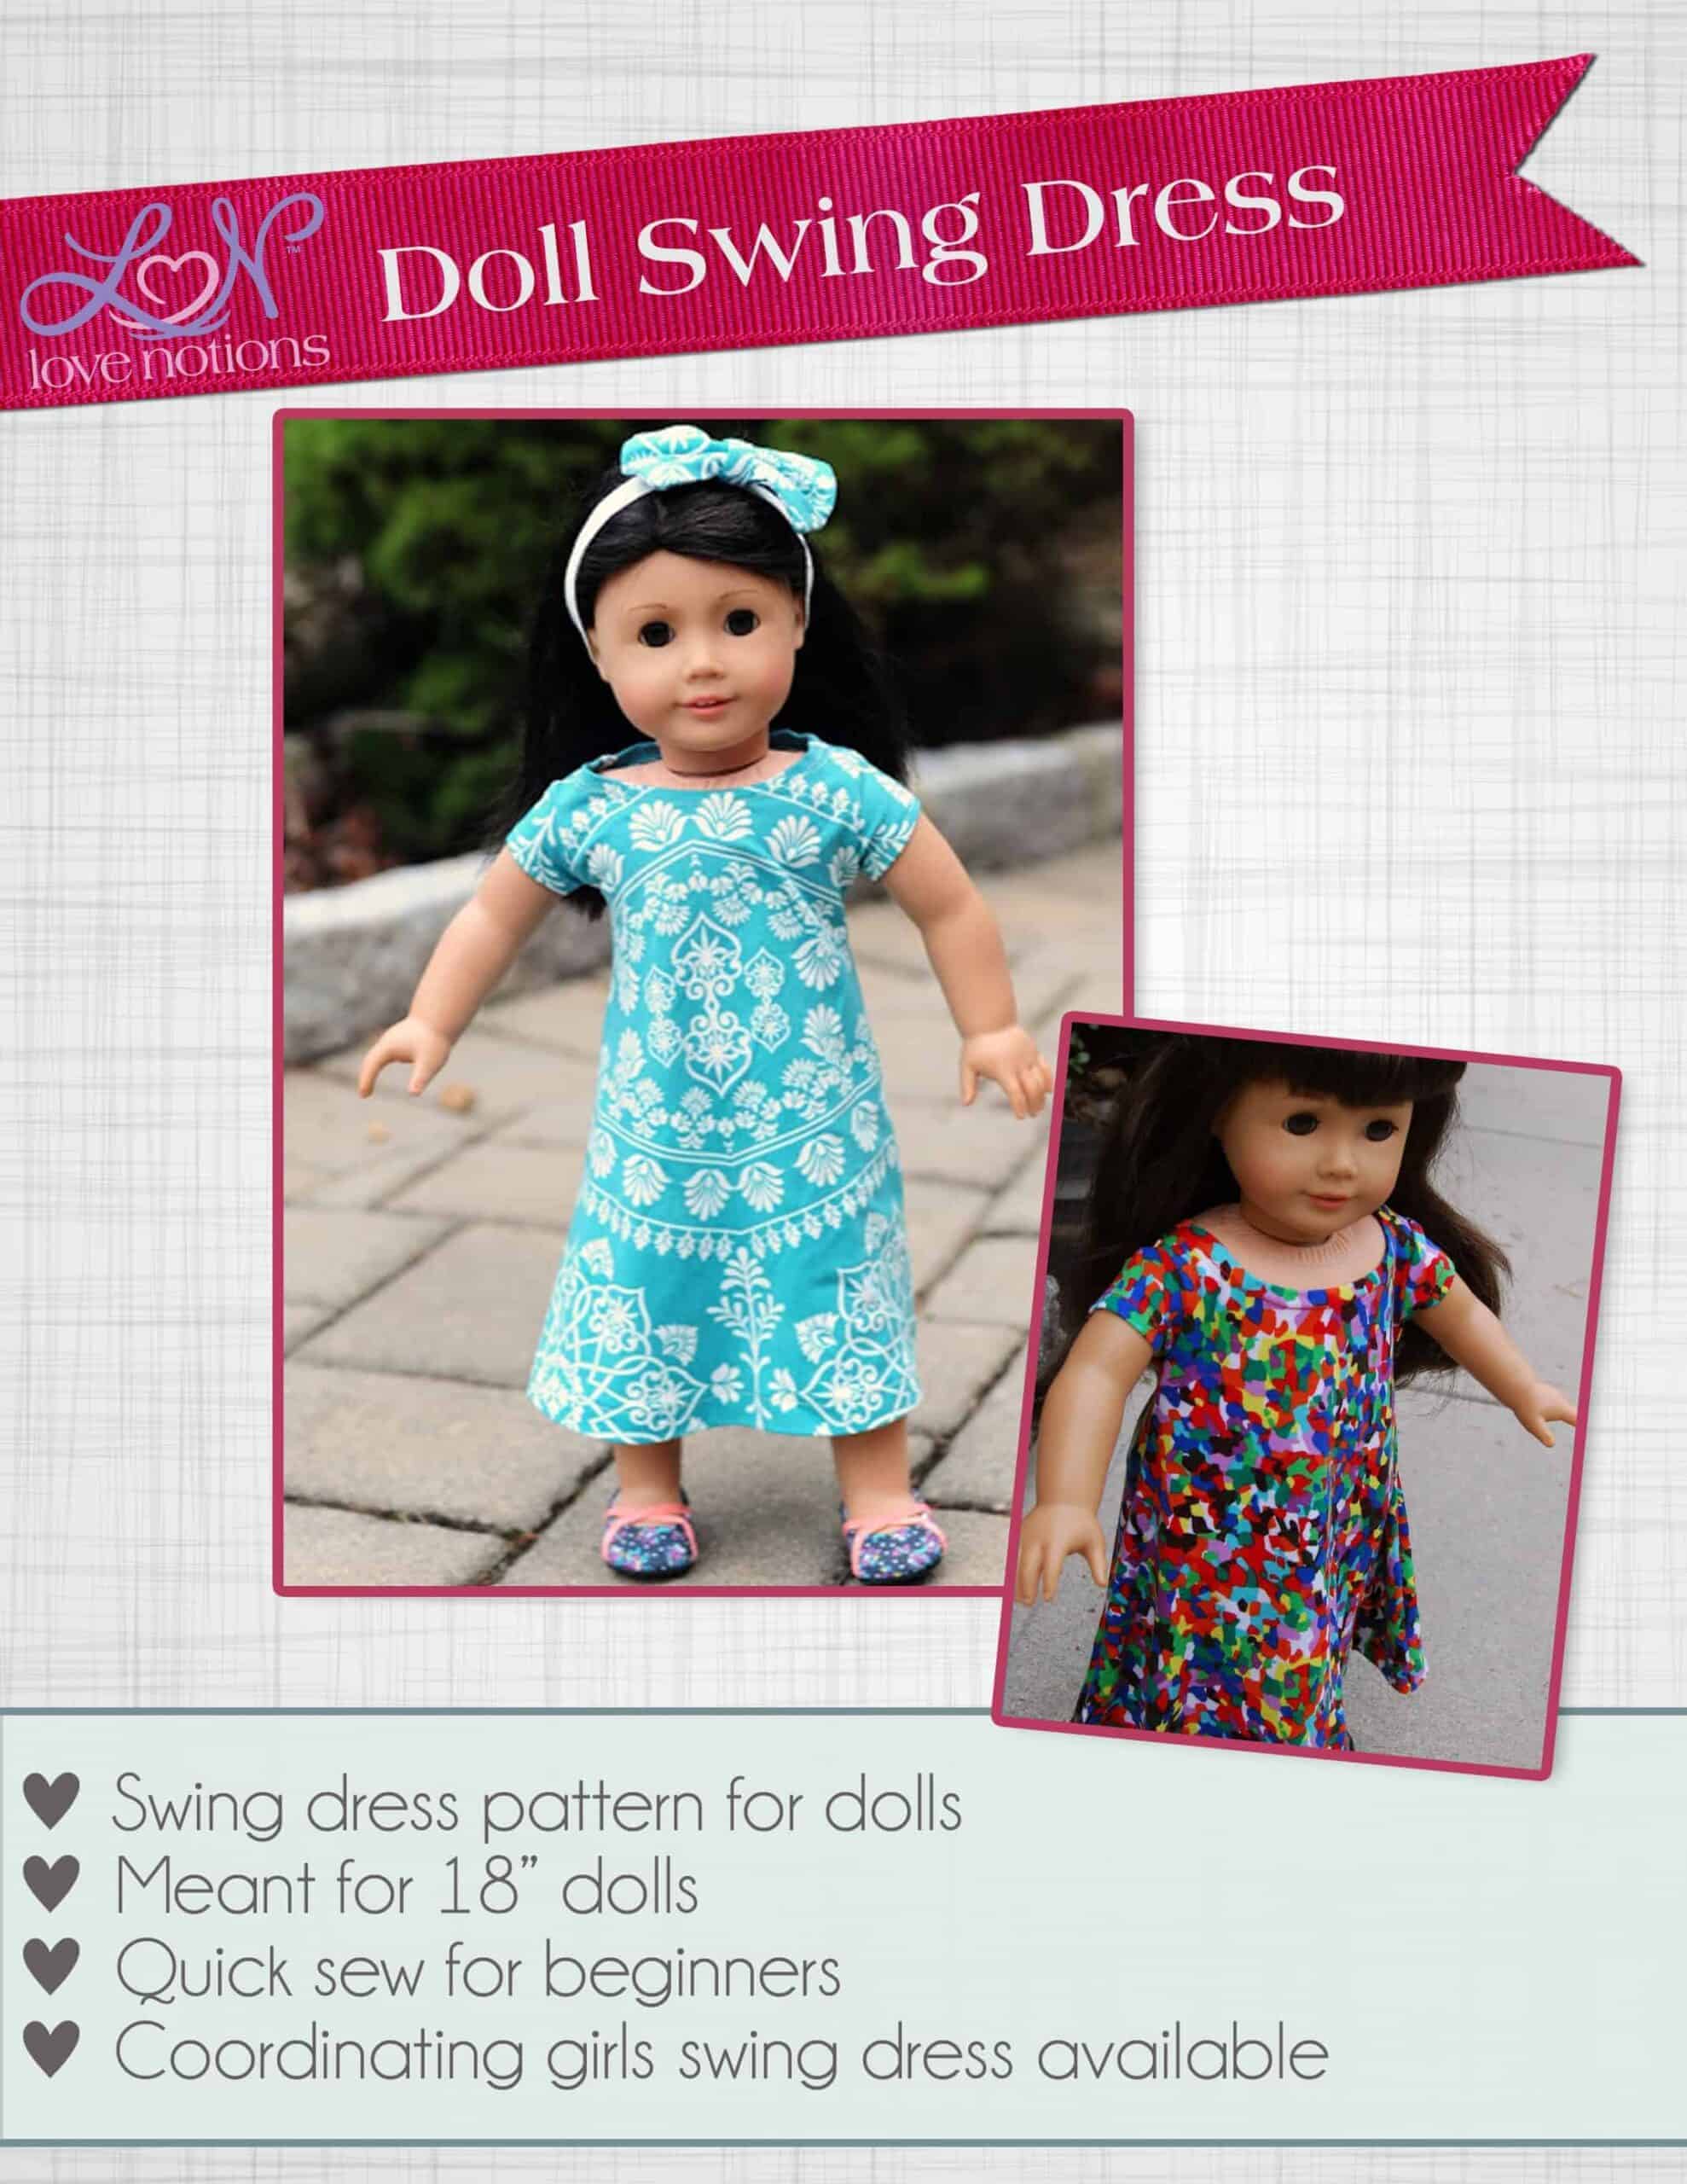 Doll swing dress pattern